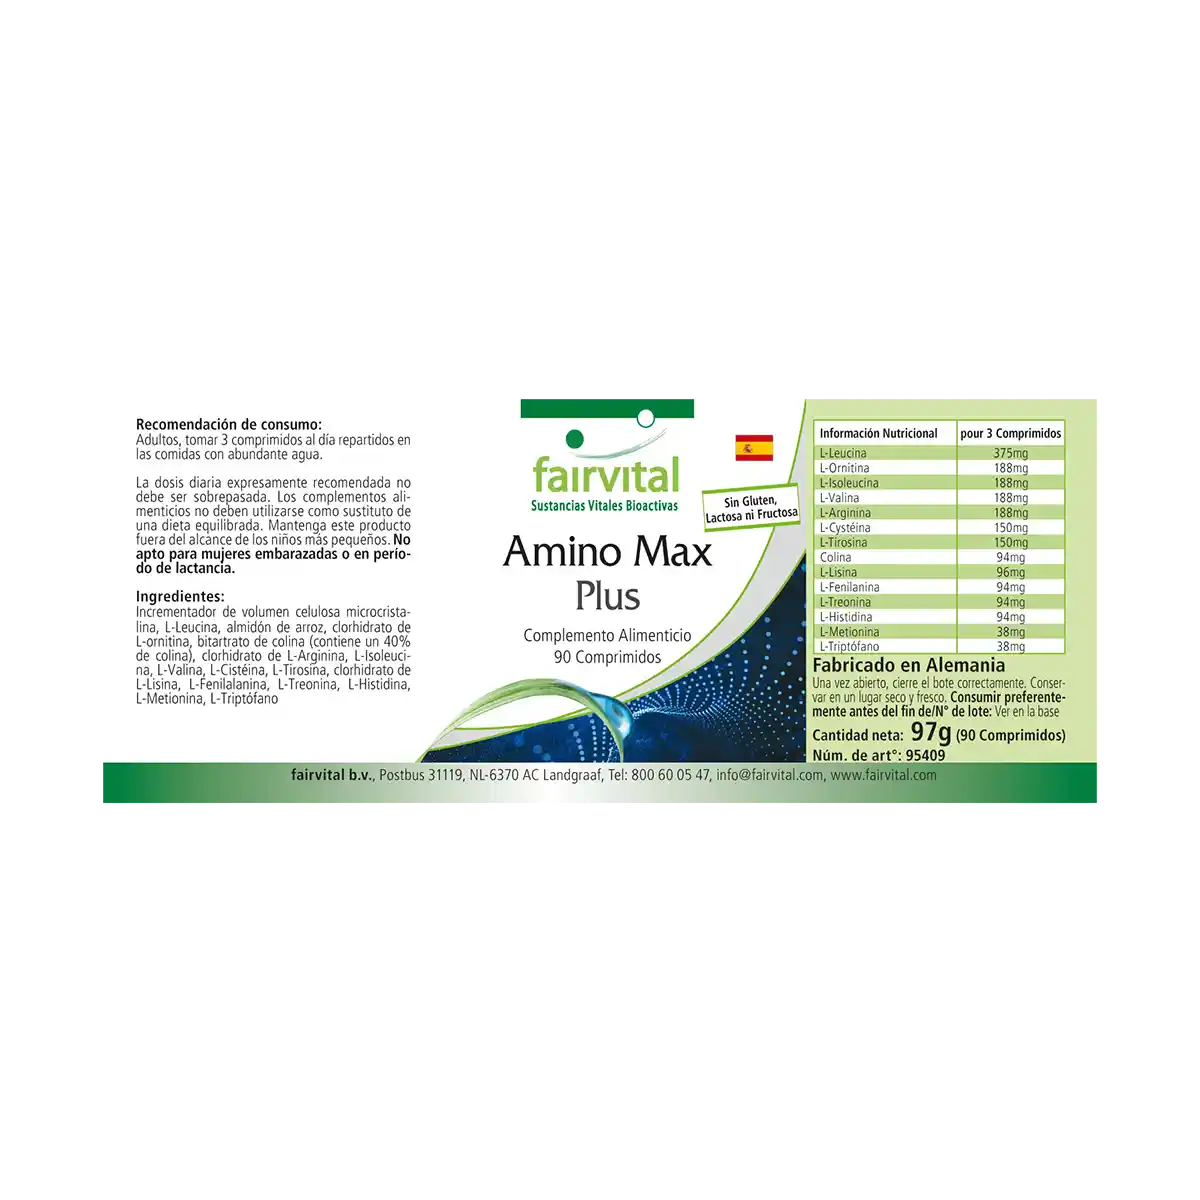 Amino Max Plus – 90 tablets